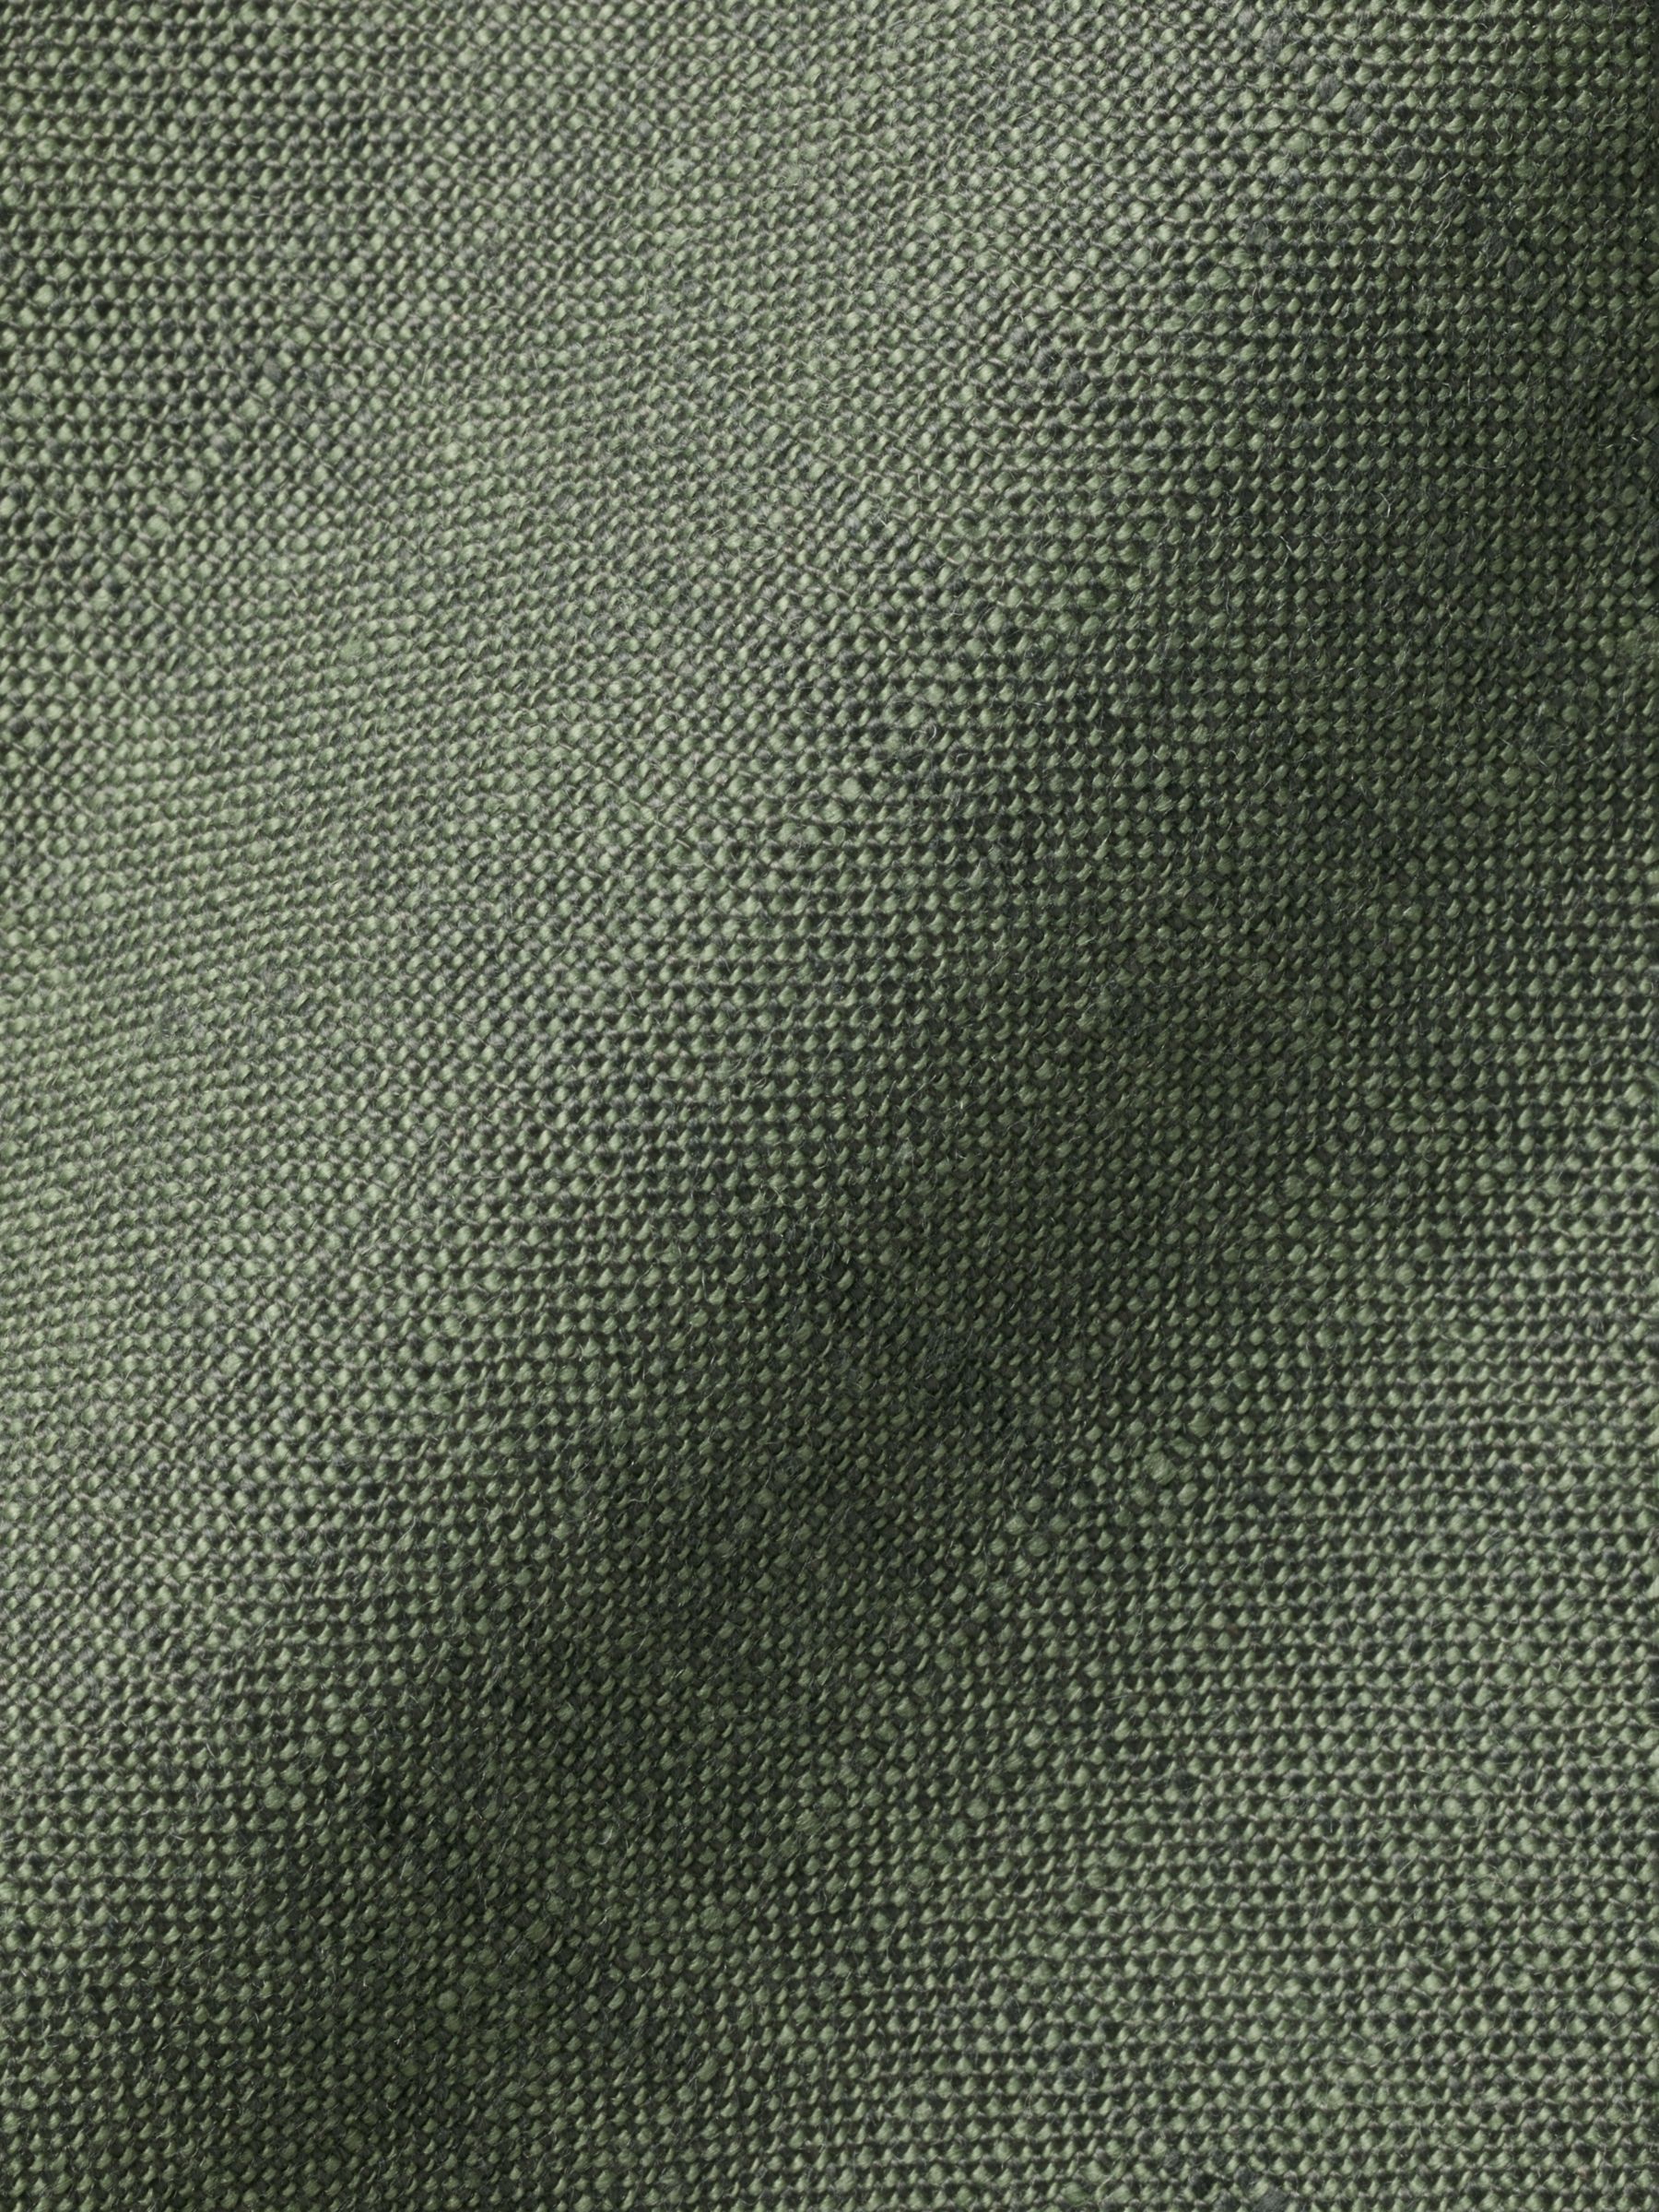 Charles Tyrwhitt Linen Collarless Slim Fit Shirt, Olive Green, S